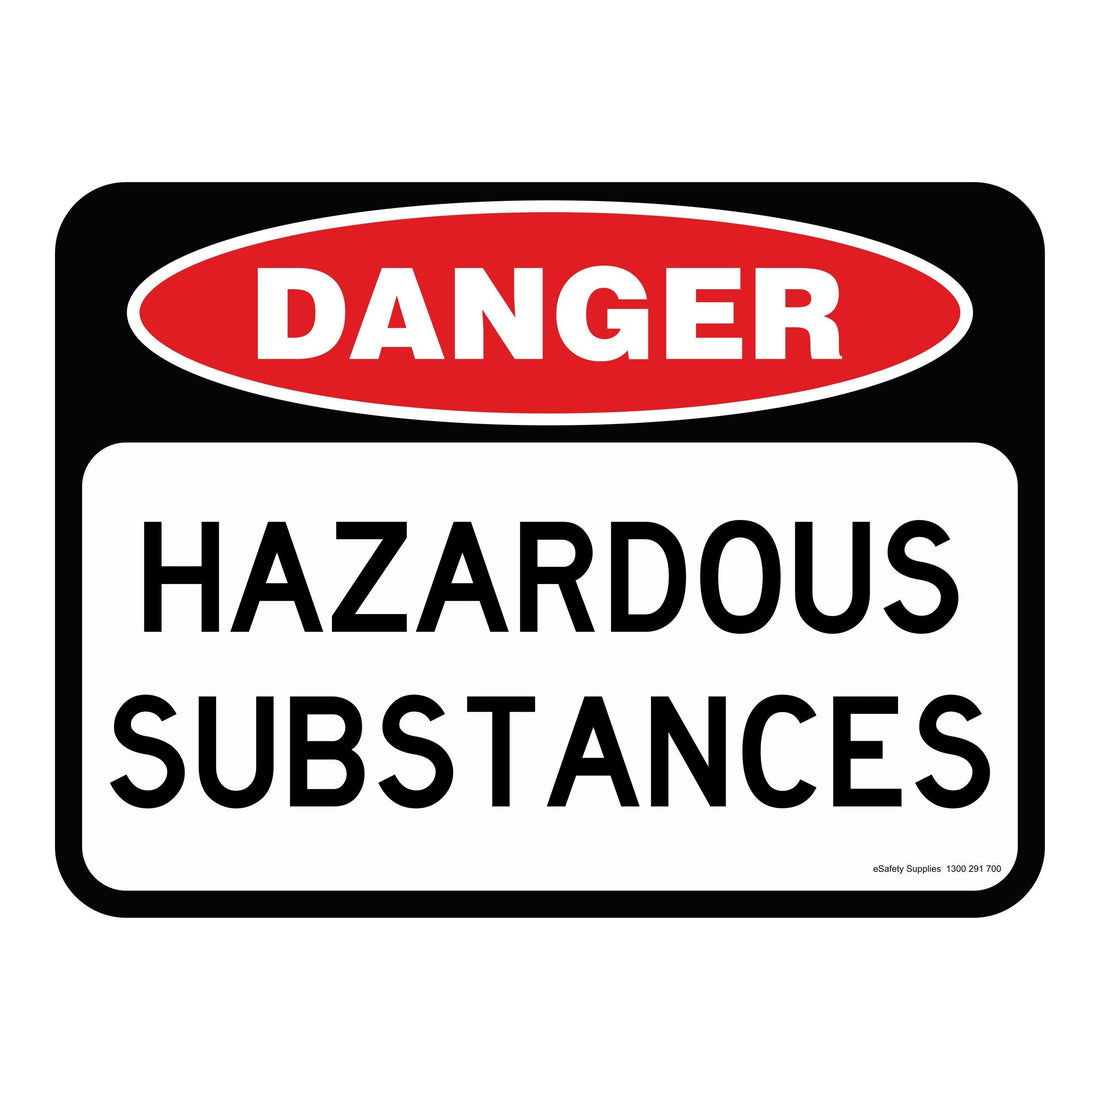 DANGER - HAZARDOUS SUBSTANCES